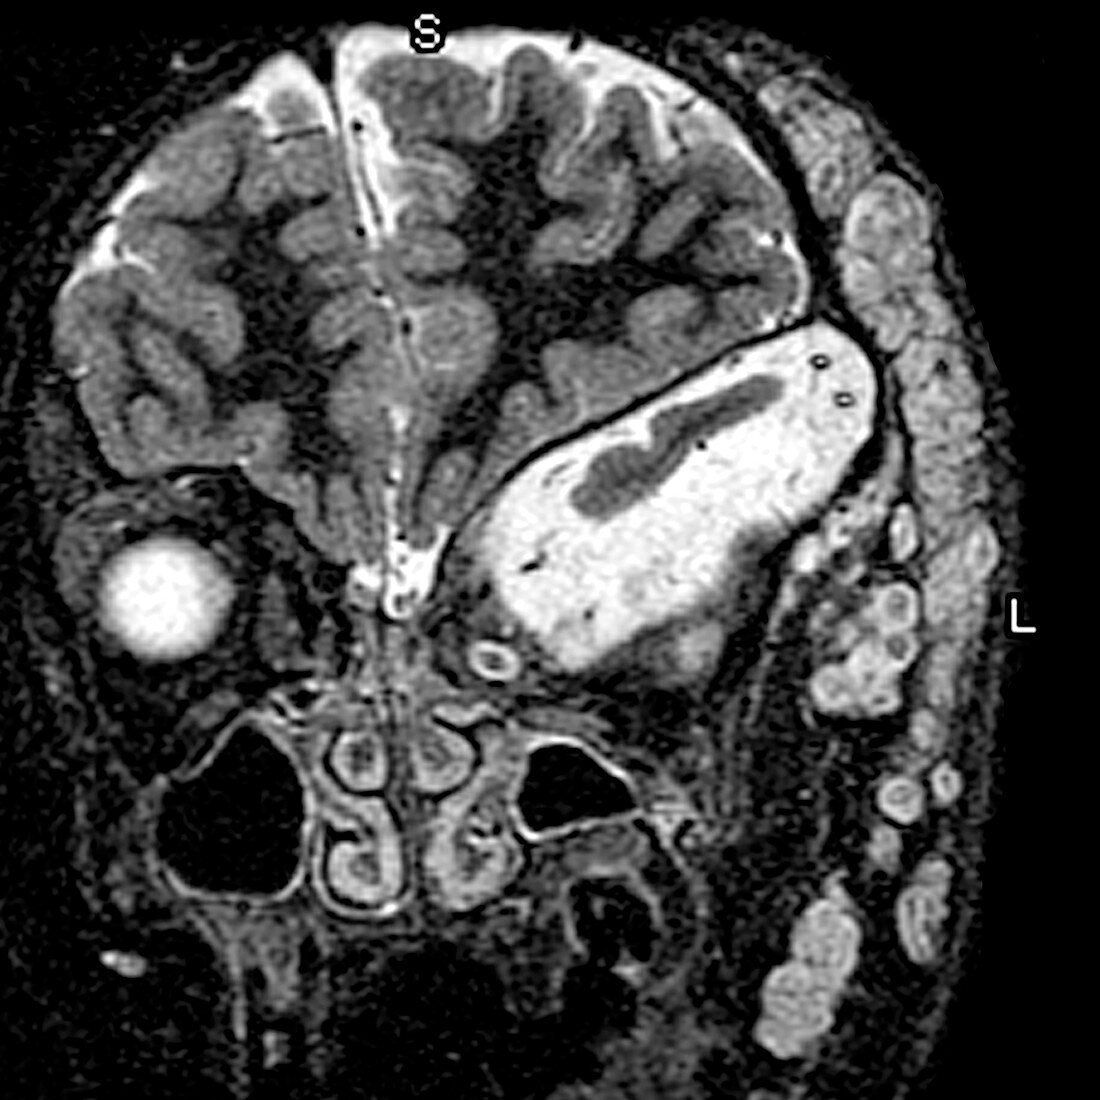 Neurofibromatosis type I, MRI